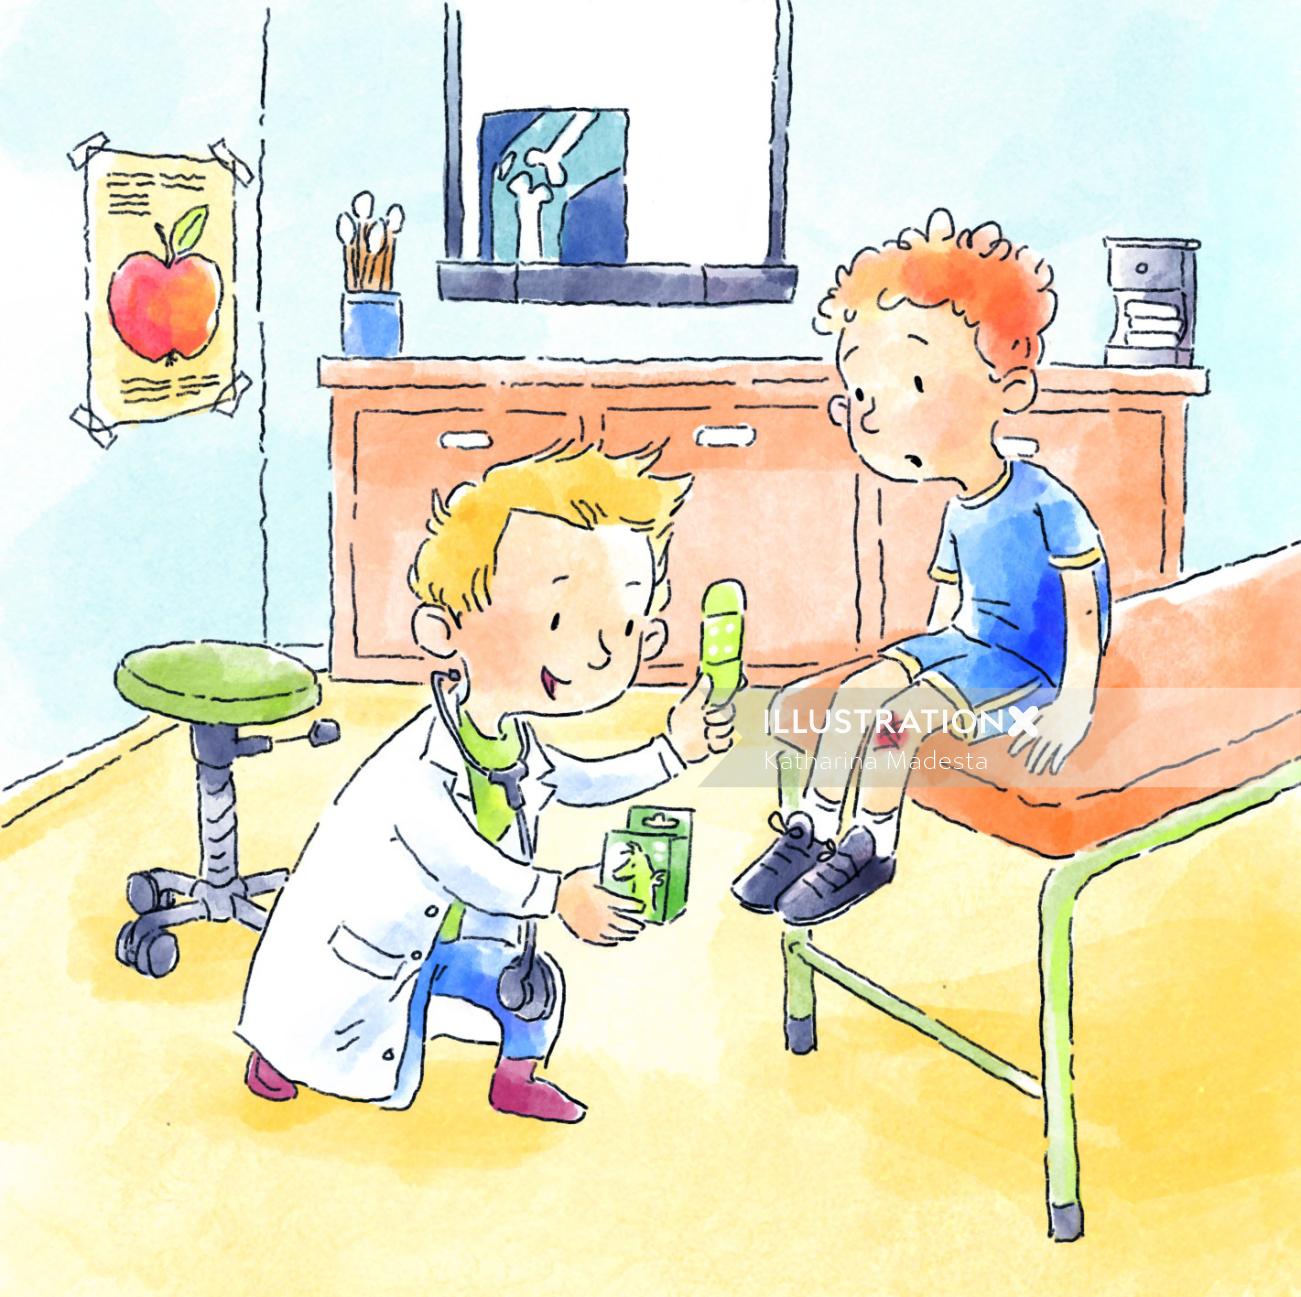 Médico de desenho animado e humor tratando de uma ferida